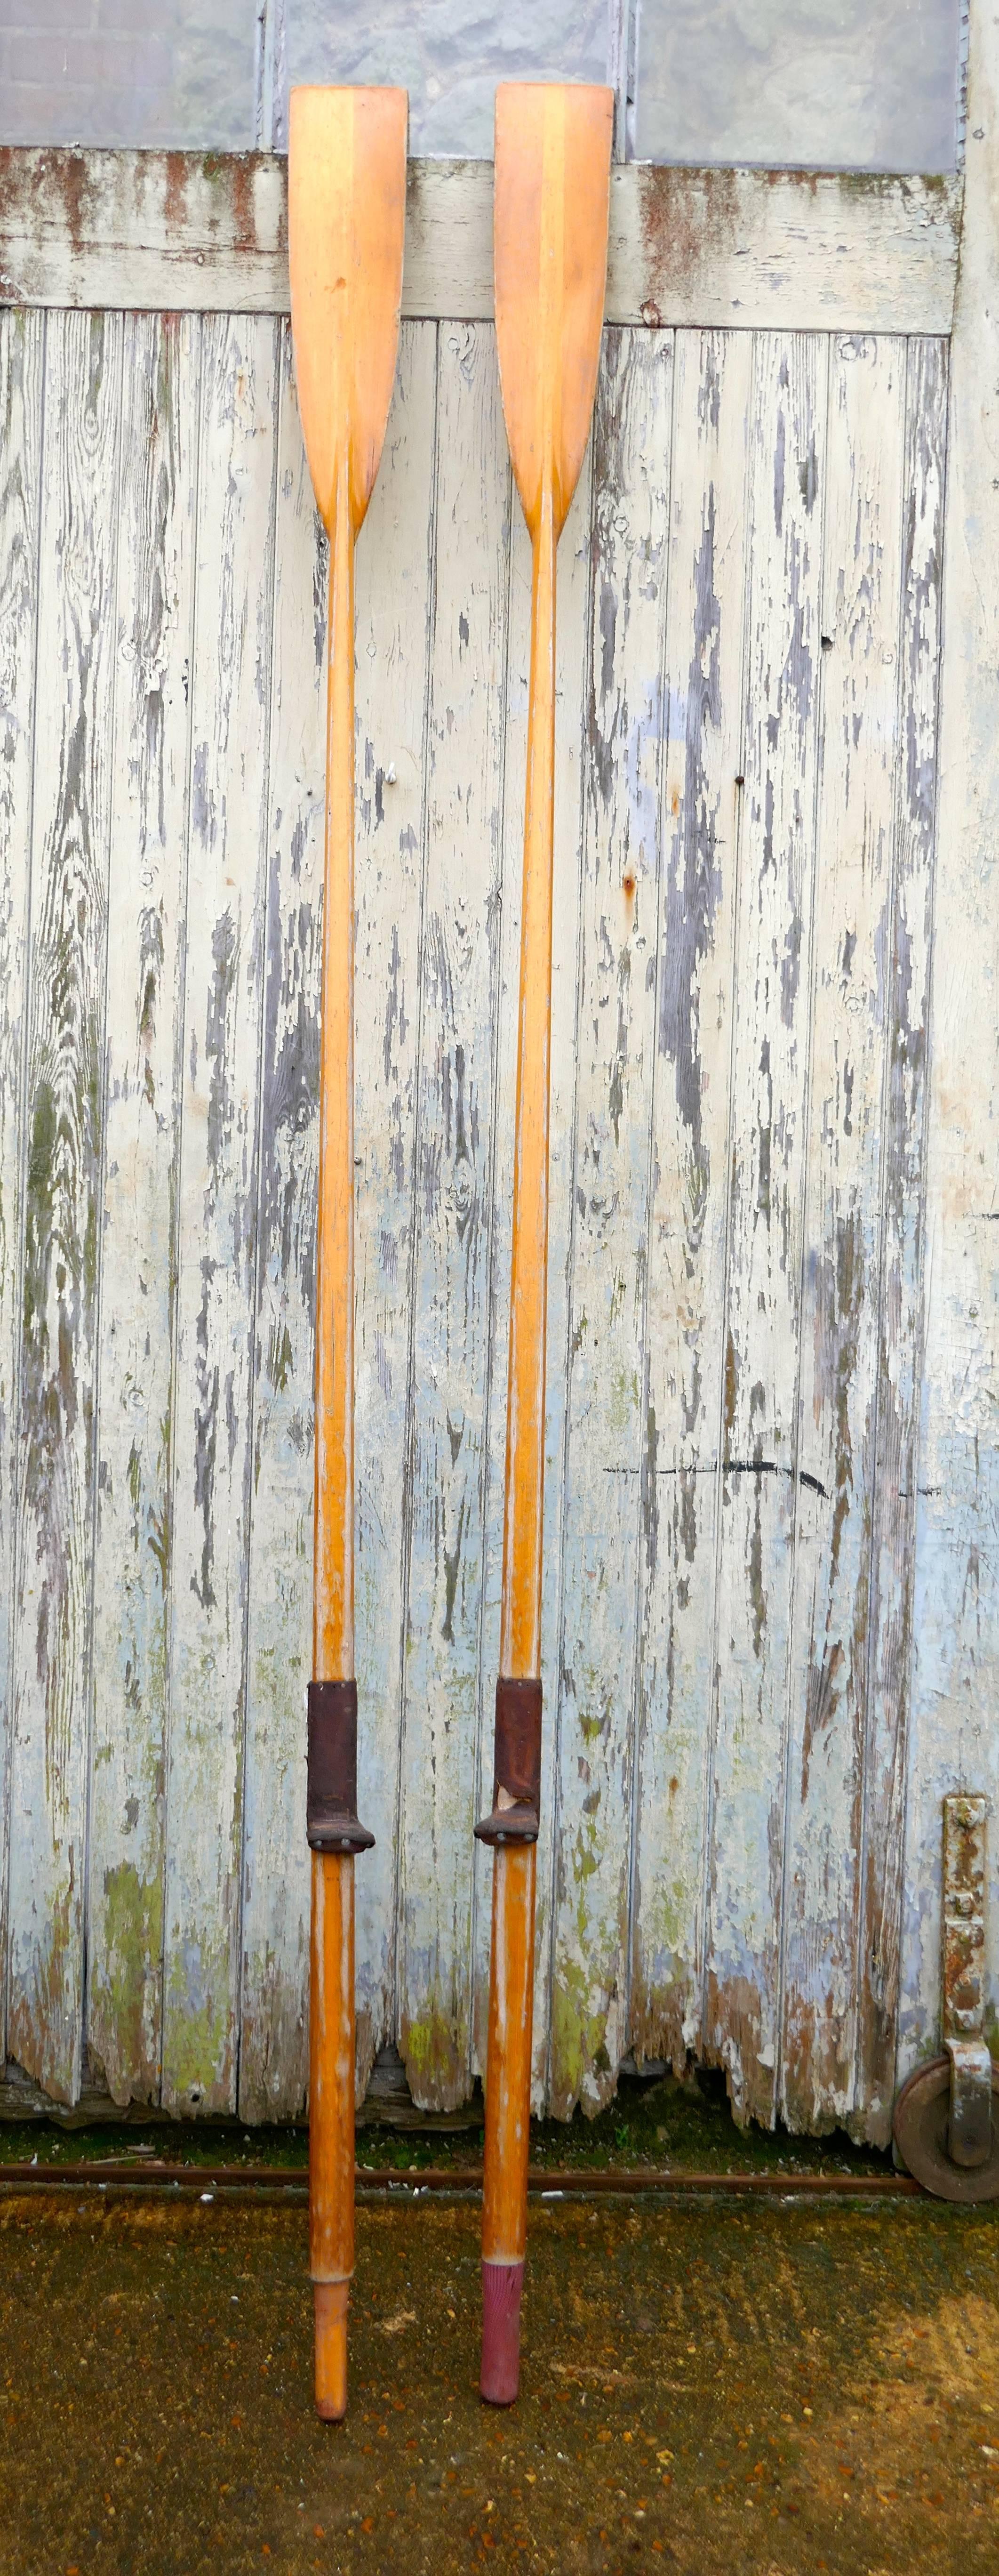 decorative rowing oars